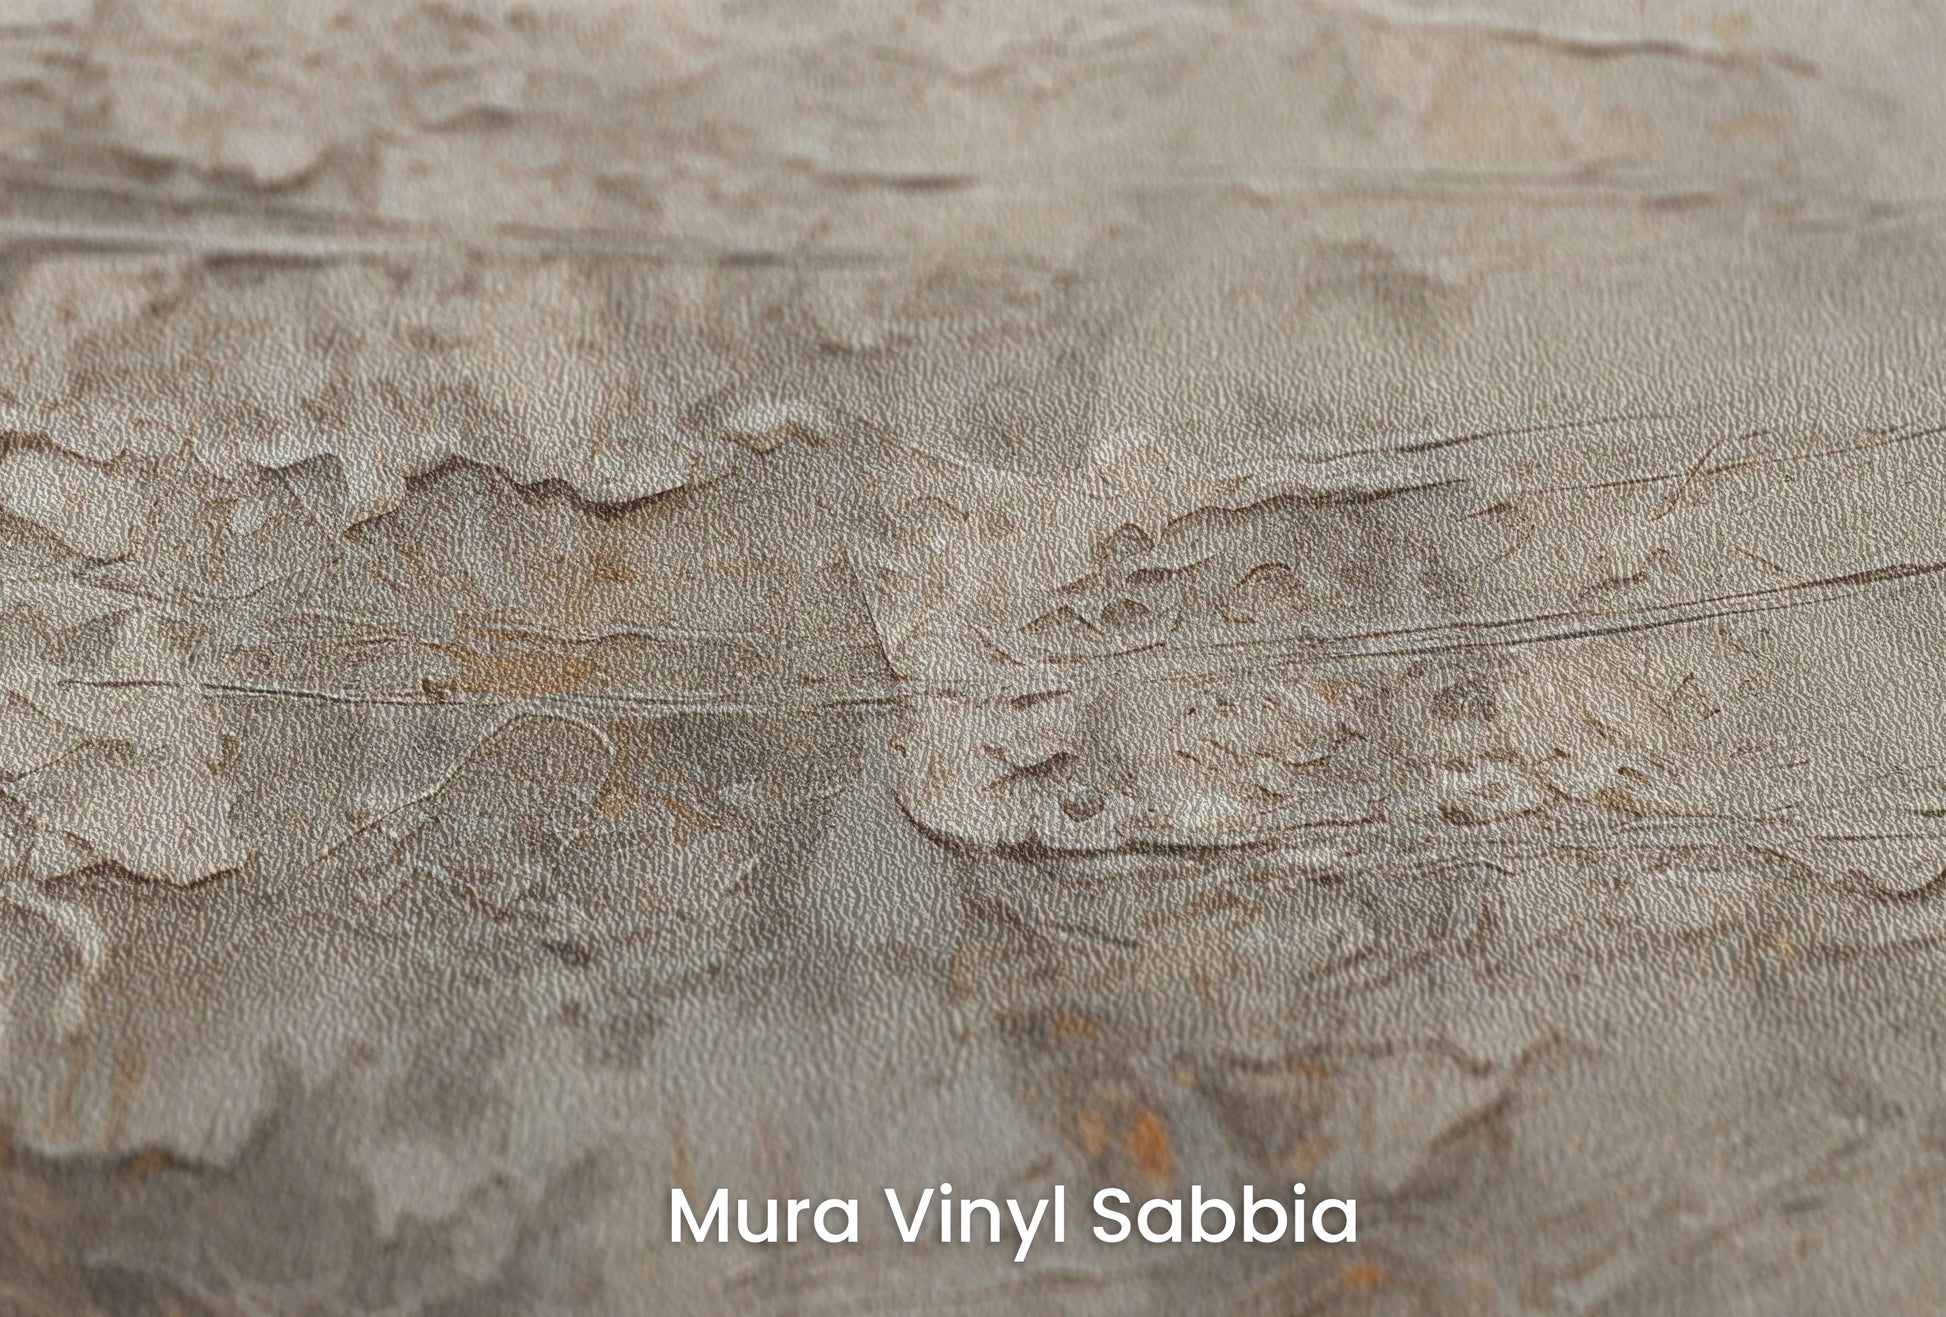 Zbliżenie na artystyczną fototapetę o nazwie Mercury's Veins na podłożu Mura Vinyl Sabbia struktura grubego ziarna piasku.